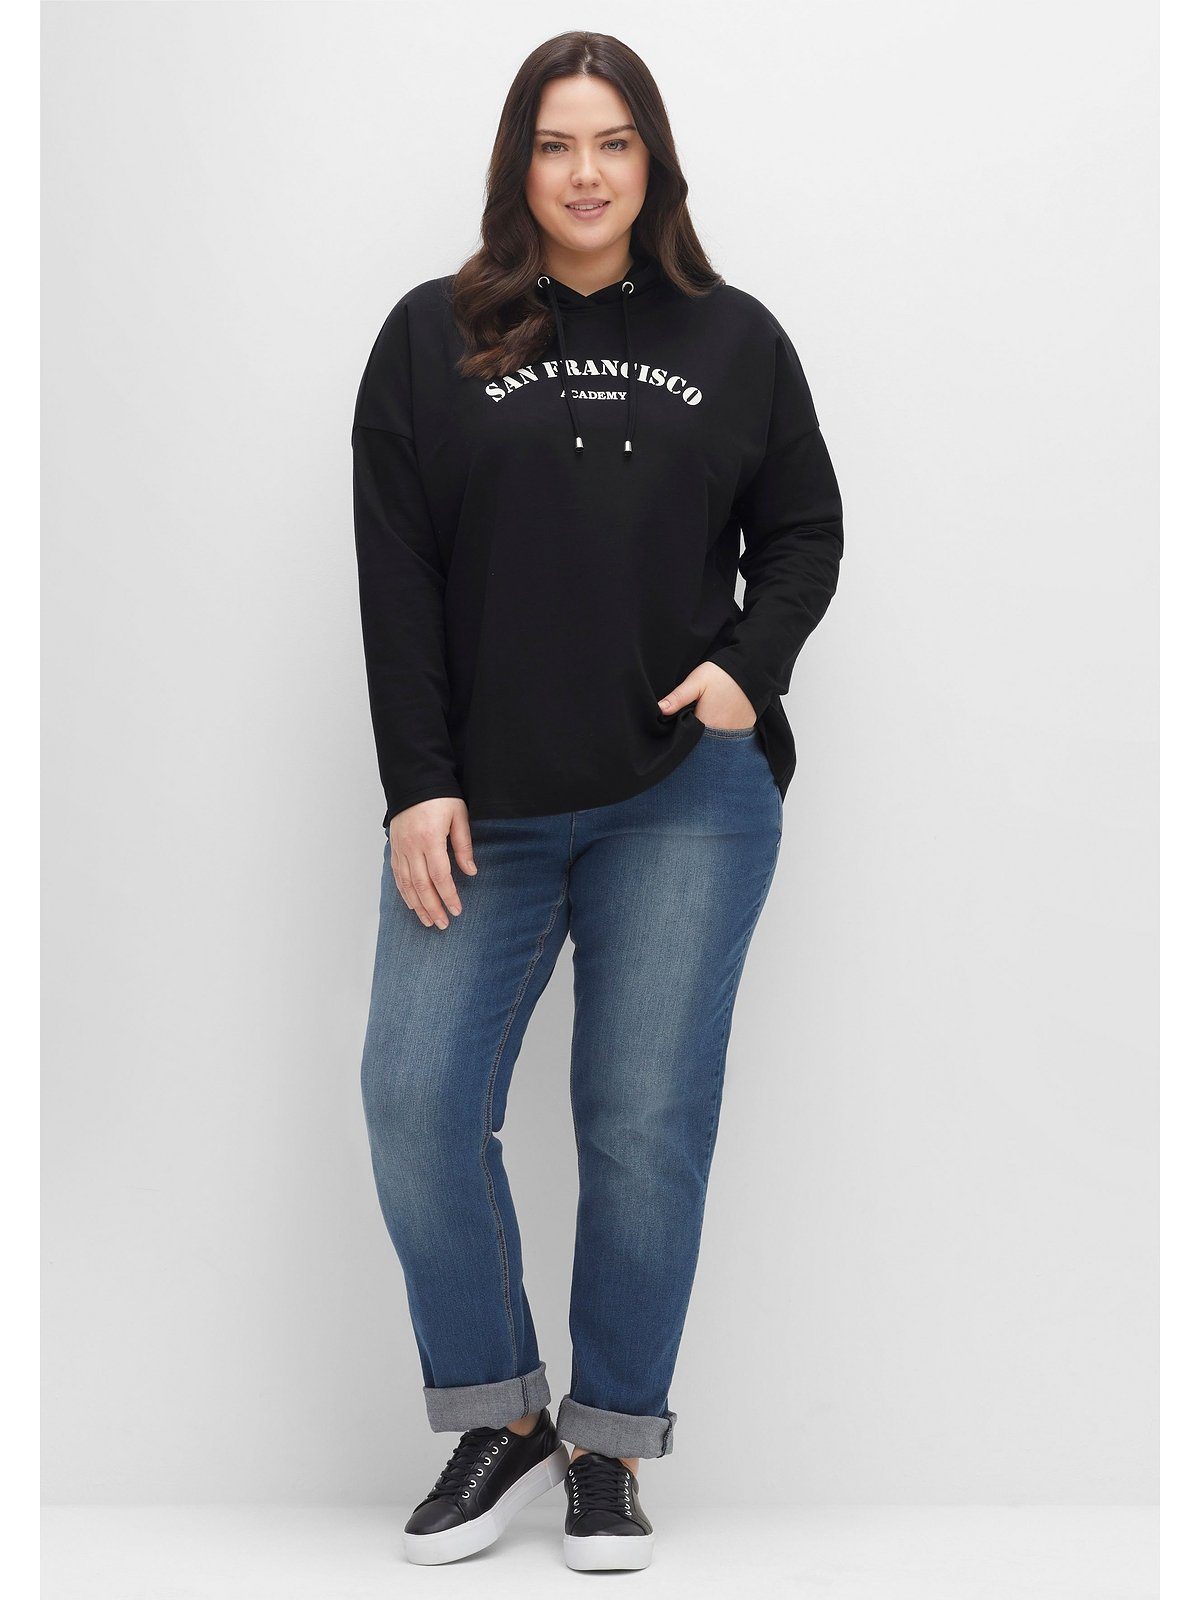 A-Linie schwarz in Frontdruck, Sheego Große Größen mit Kapuzensweatshirt